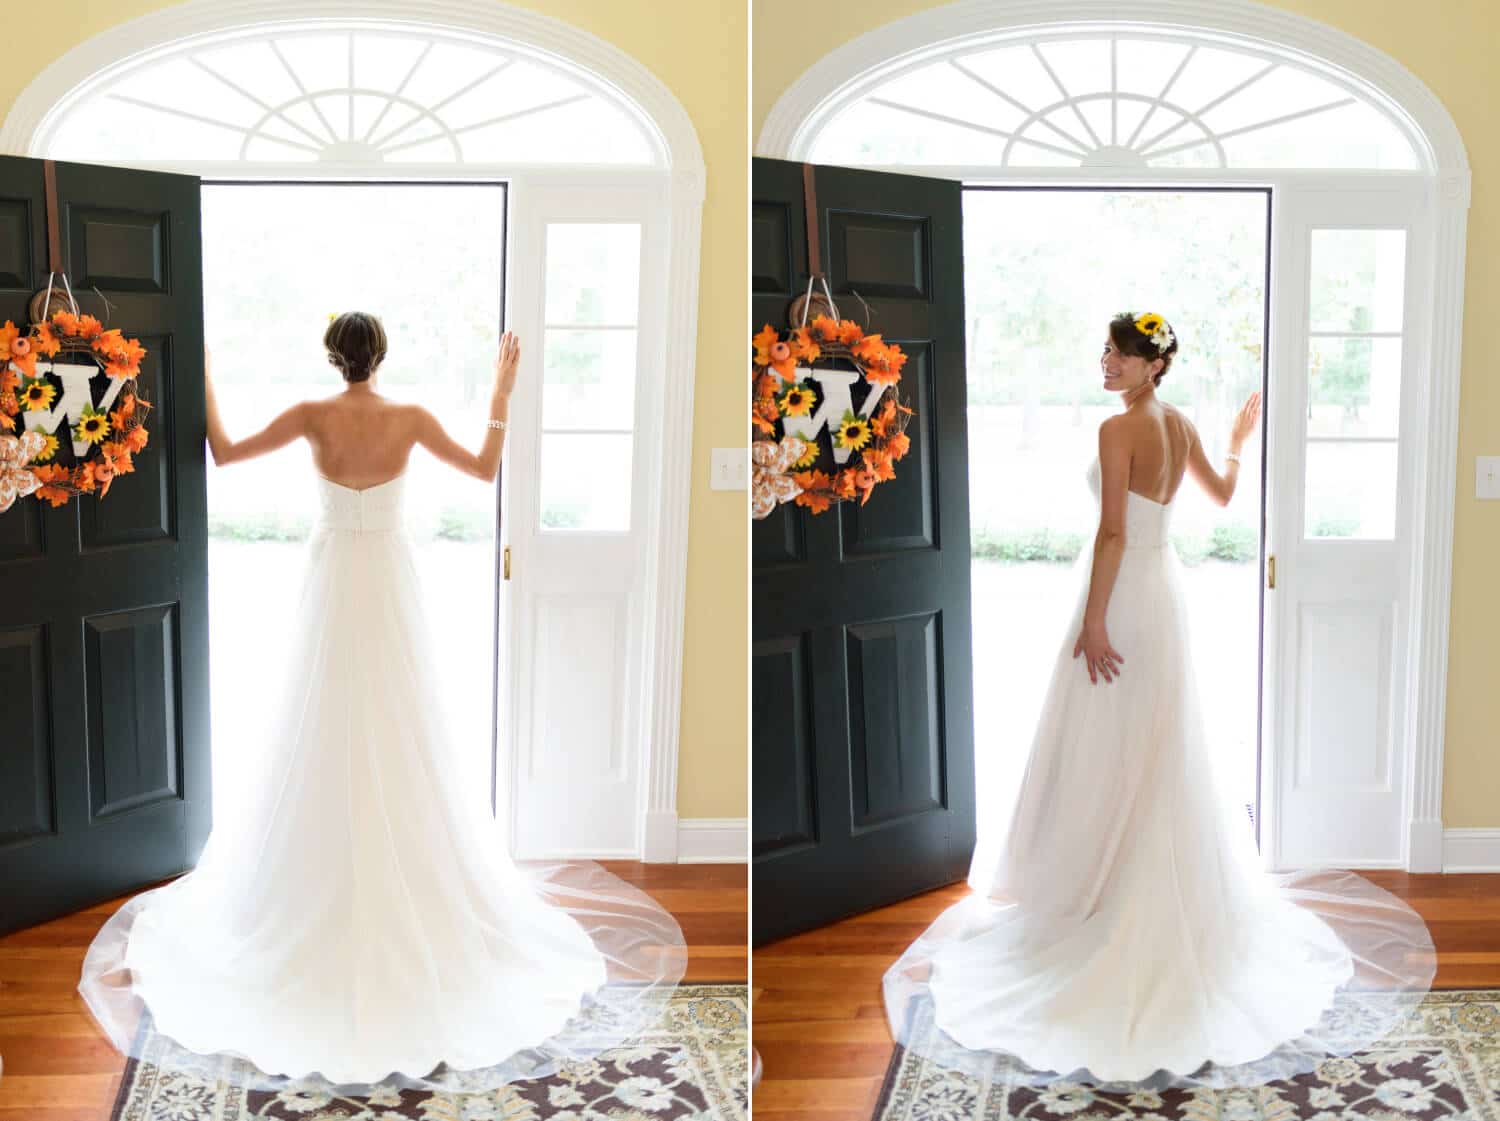 Bride standing in her doorway with dress flowing behind her